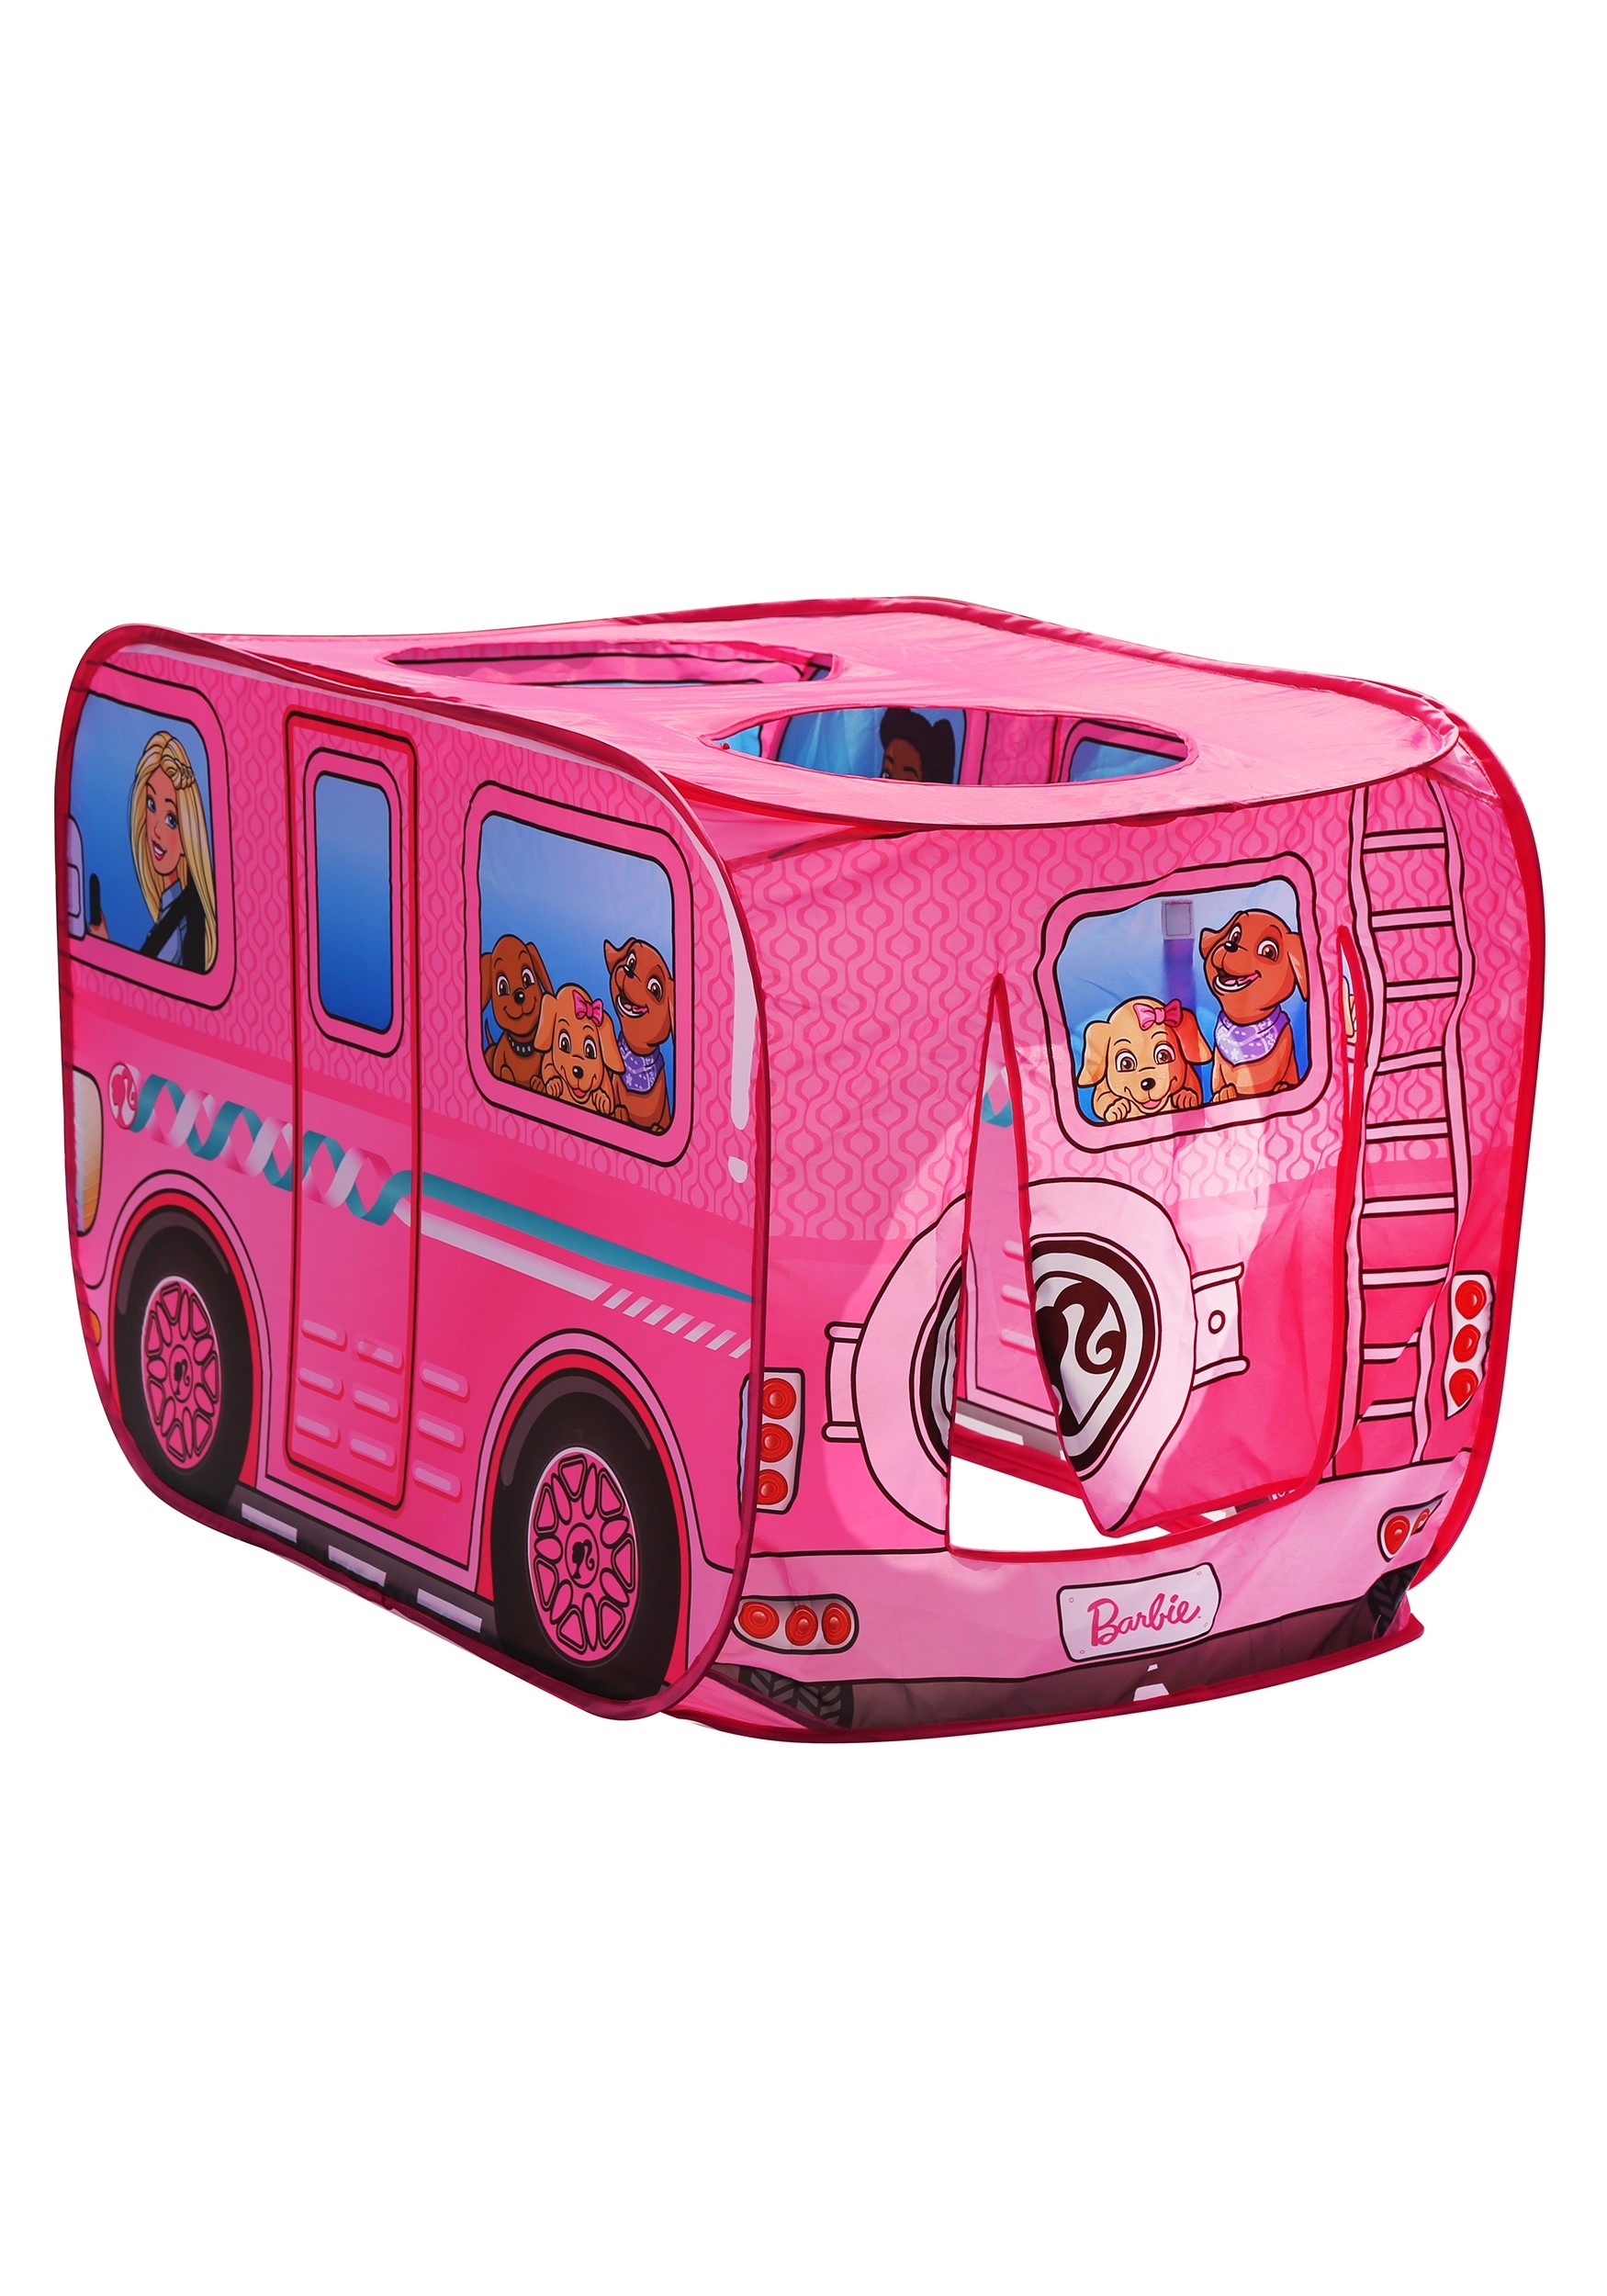 Barbie Dream Camper PopUp